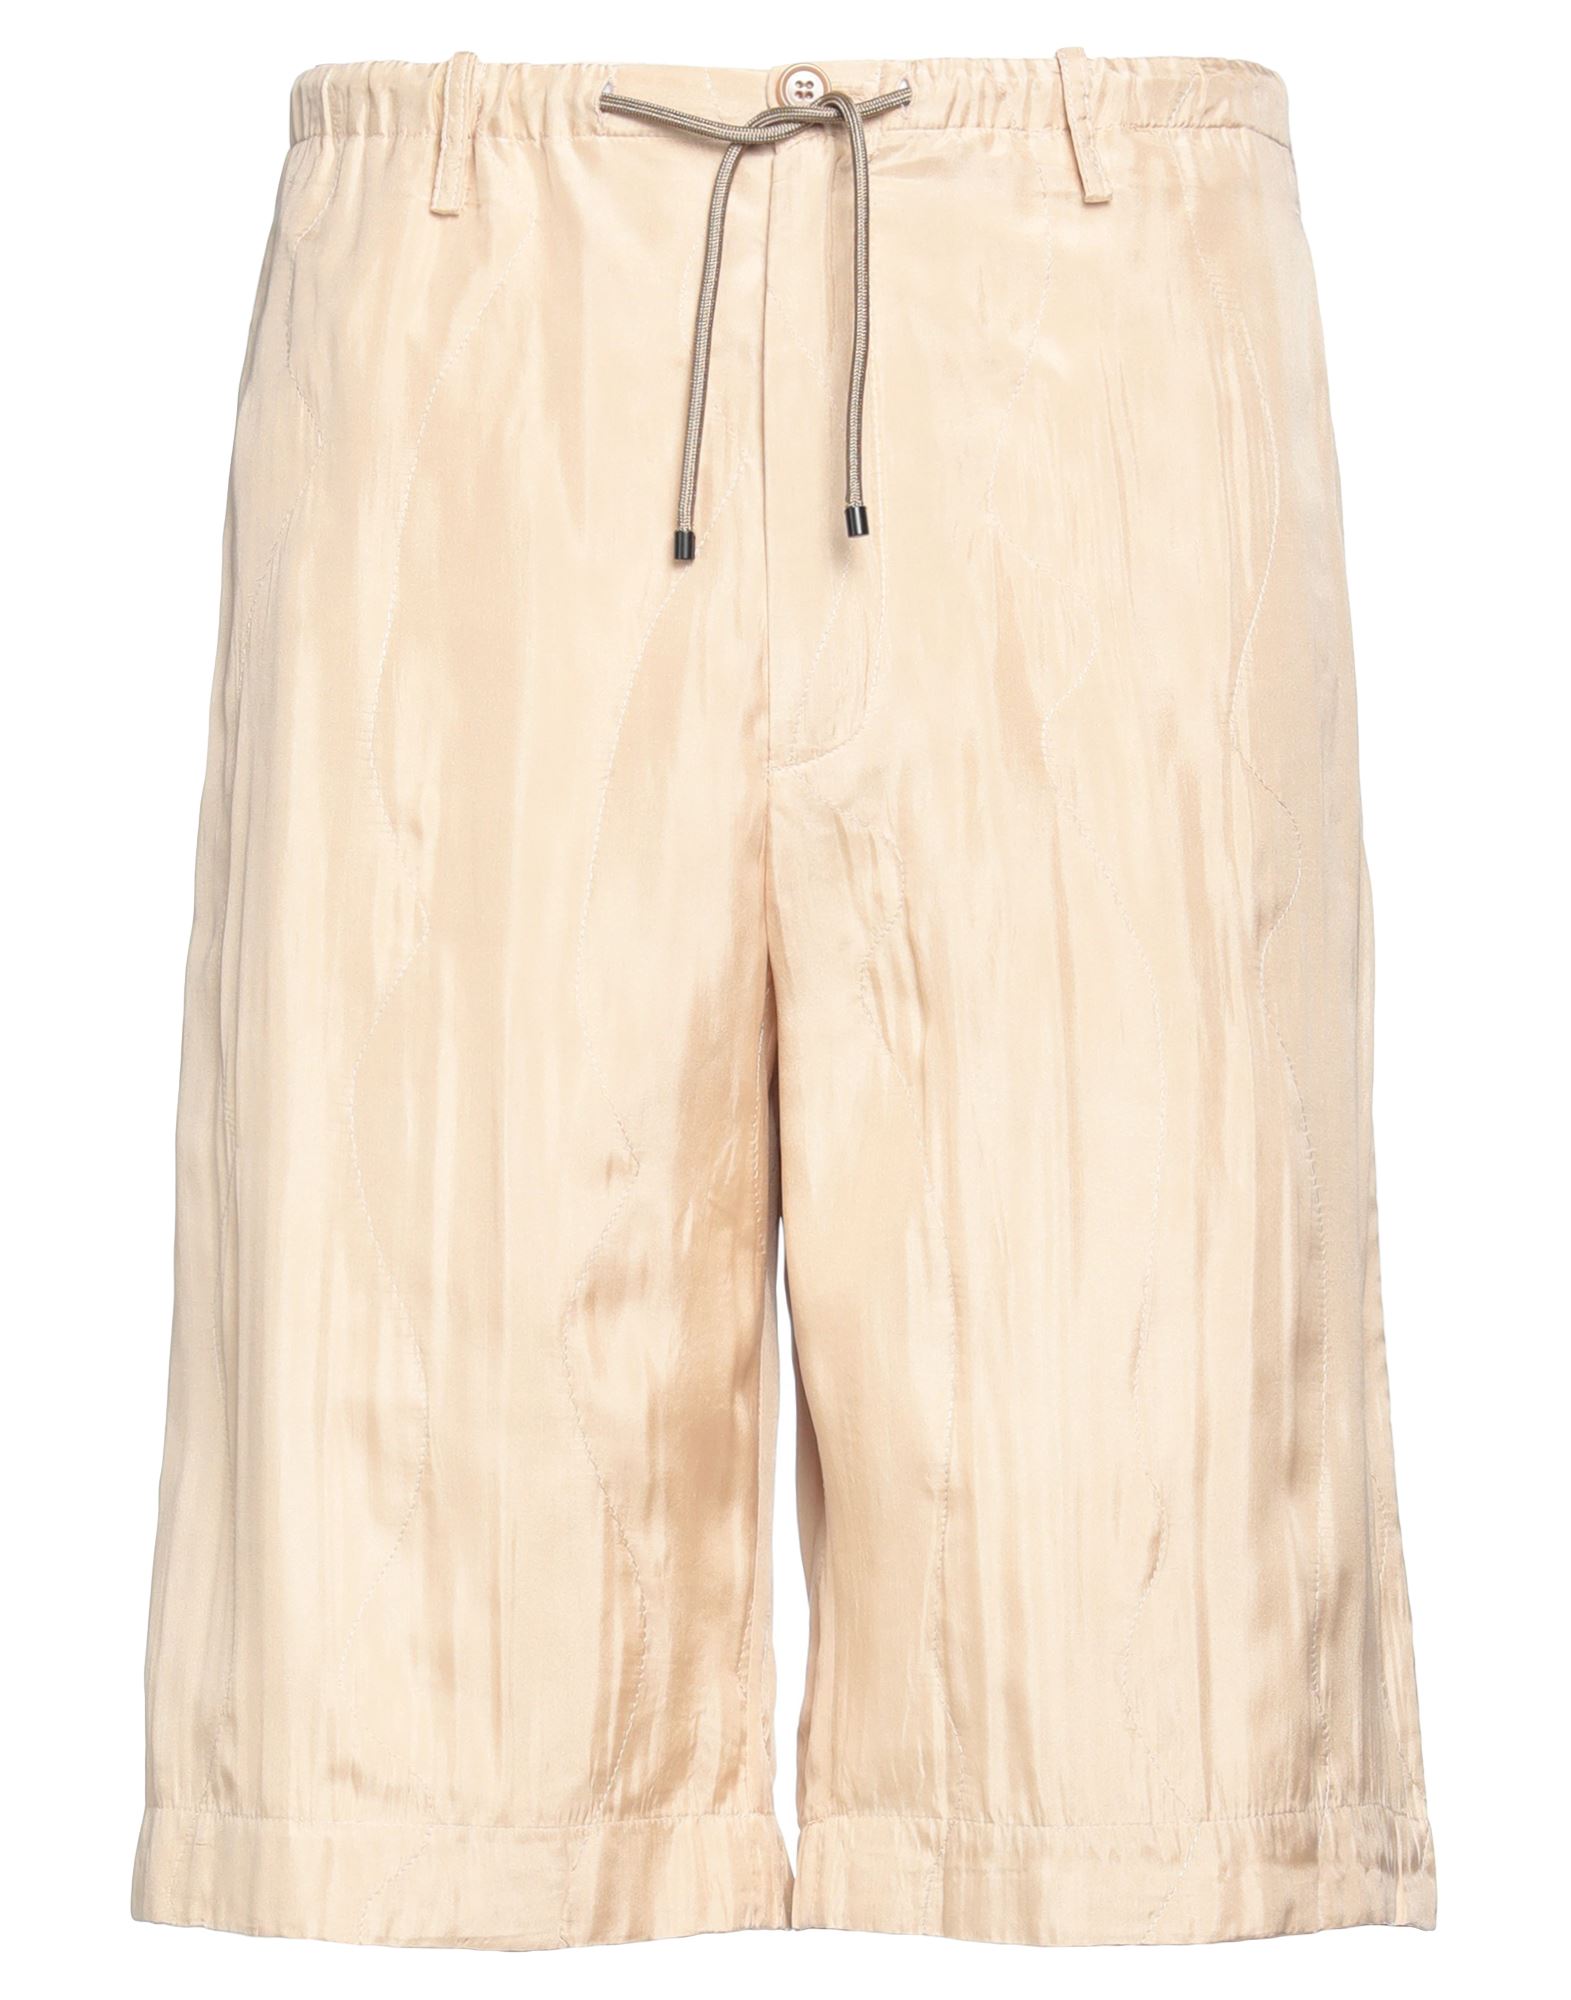 Dries Van Noten Man Shorts & Bermuda Shorts Beige Size 34 Silk, Cotton